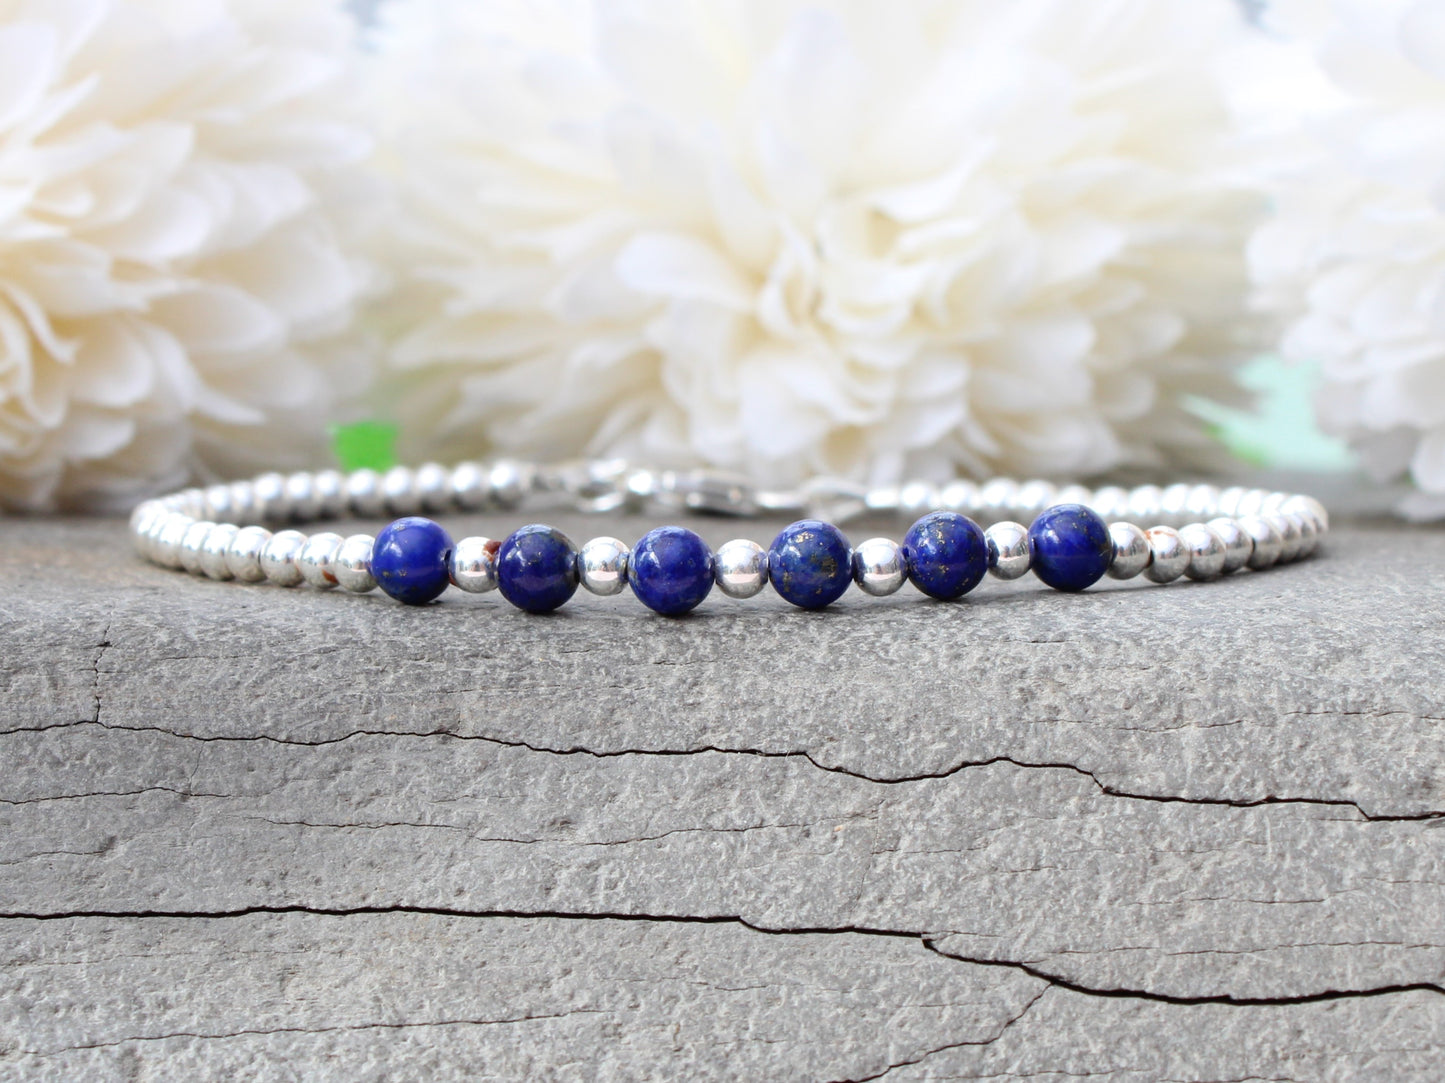 Lapis lazuli milestone bracelet in sterling silver.